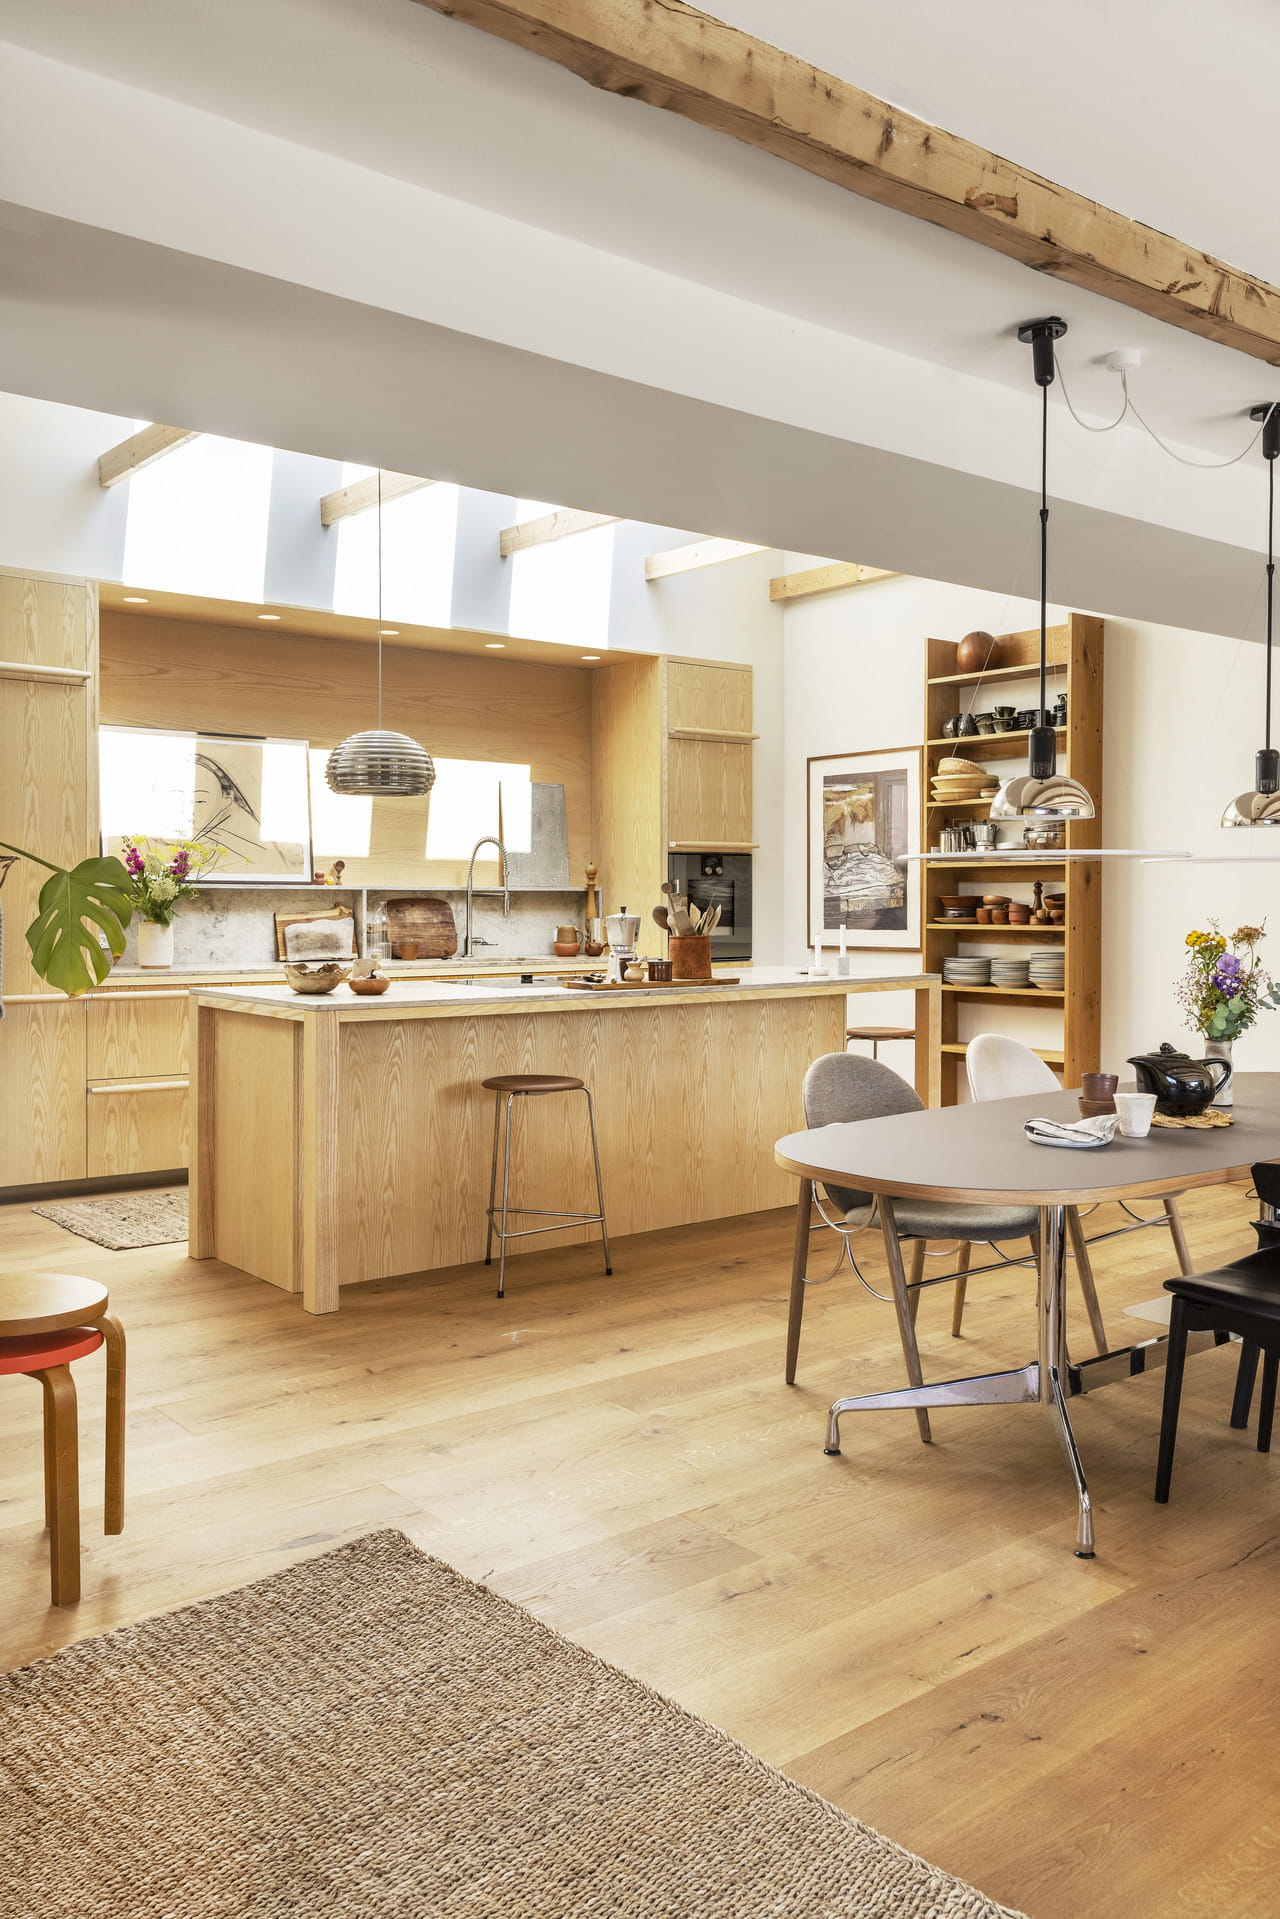 Helle Küche mit Naturholz, modernen Geräten und VELUX Dachflächenfenster.